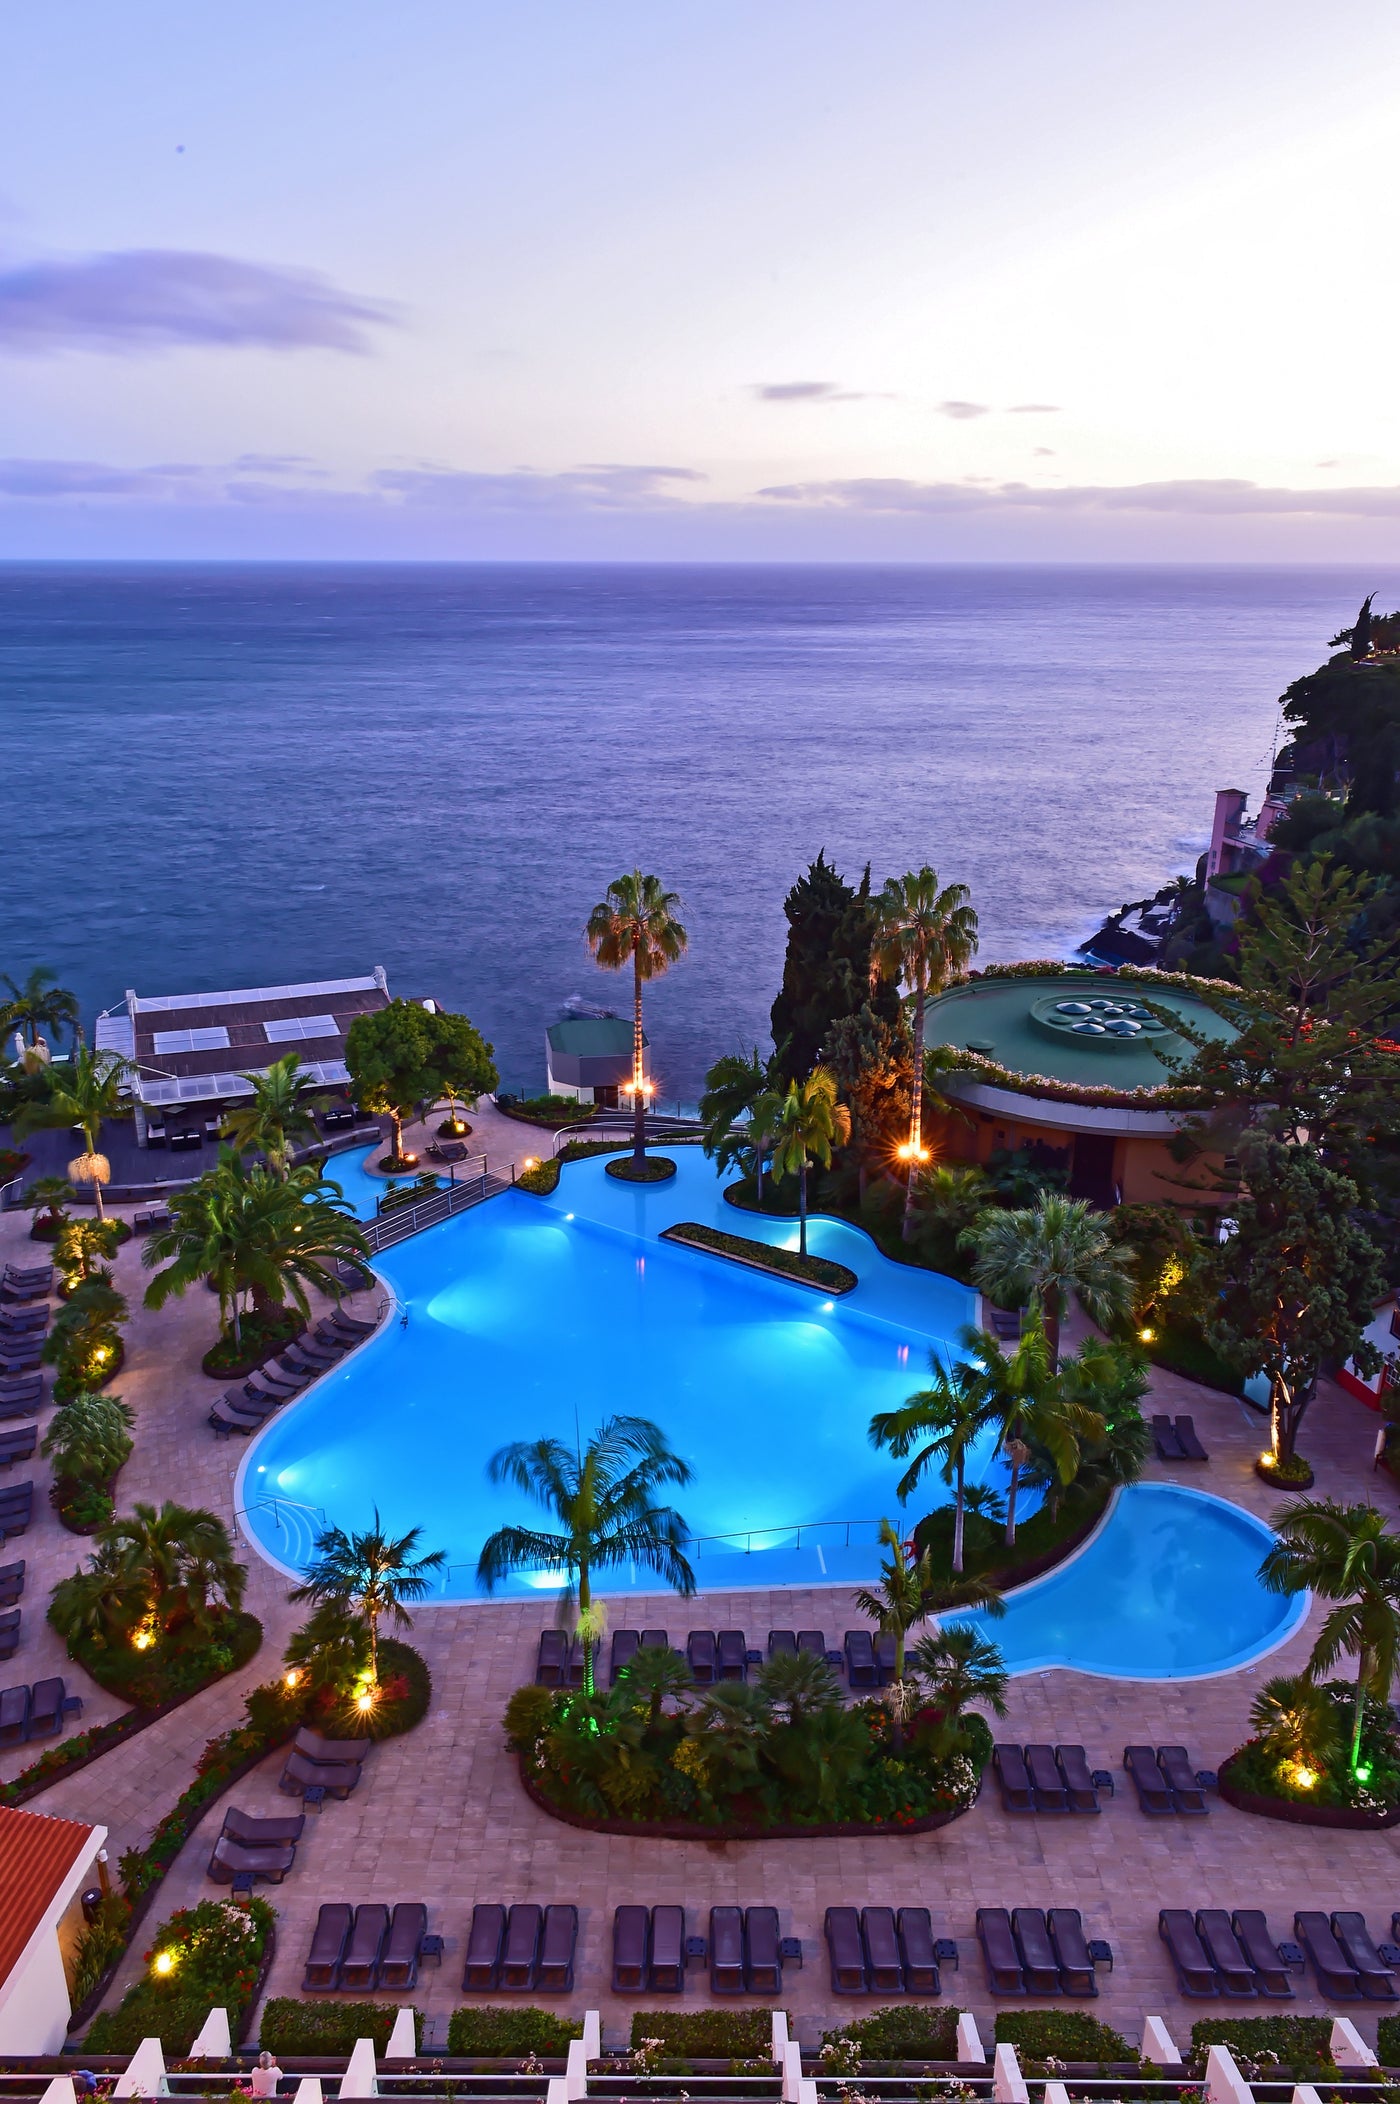 Imagem da piscina e vista de um dos hotéis do Pestana Hotel Group.